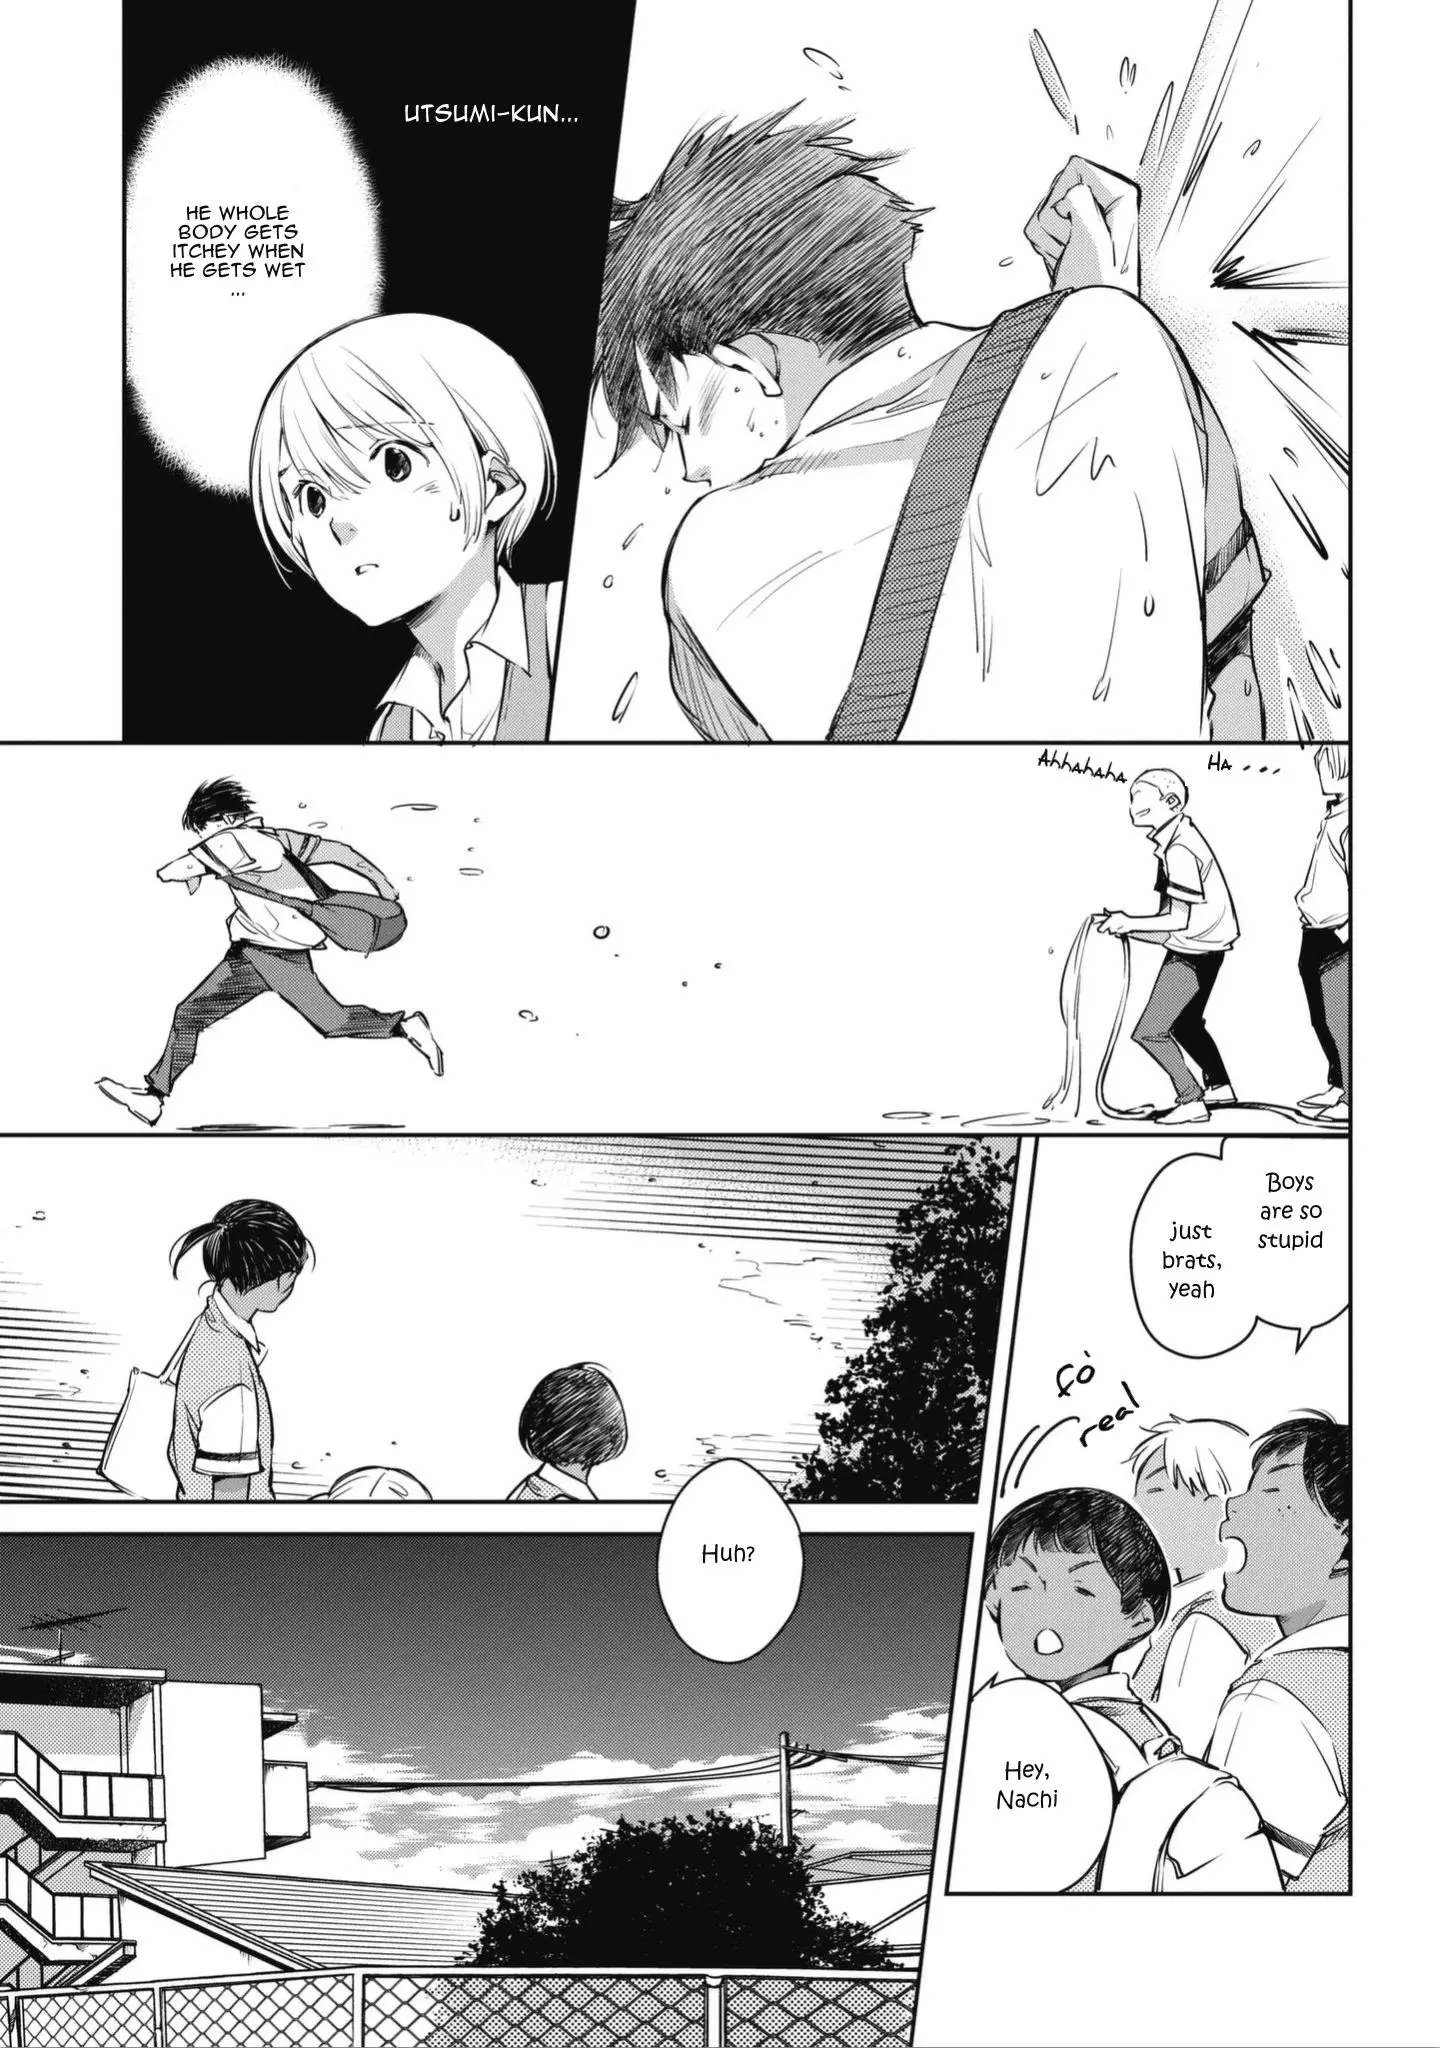 Okashiratsuki - 1 page 23